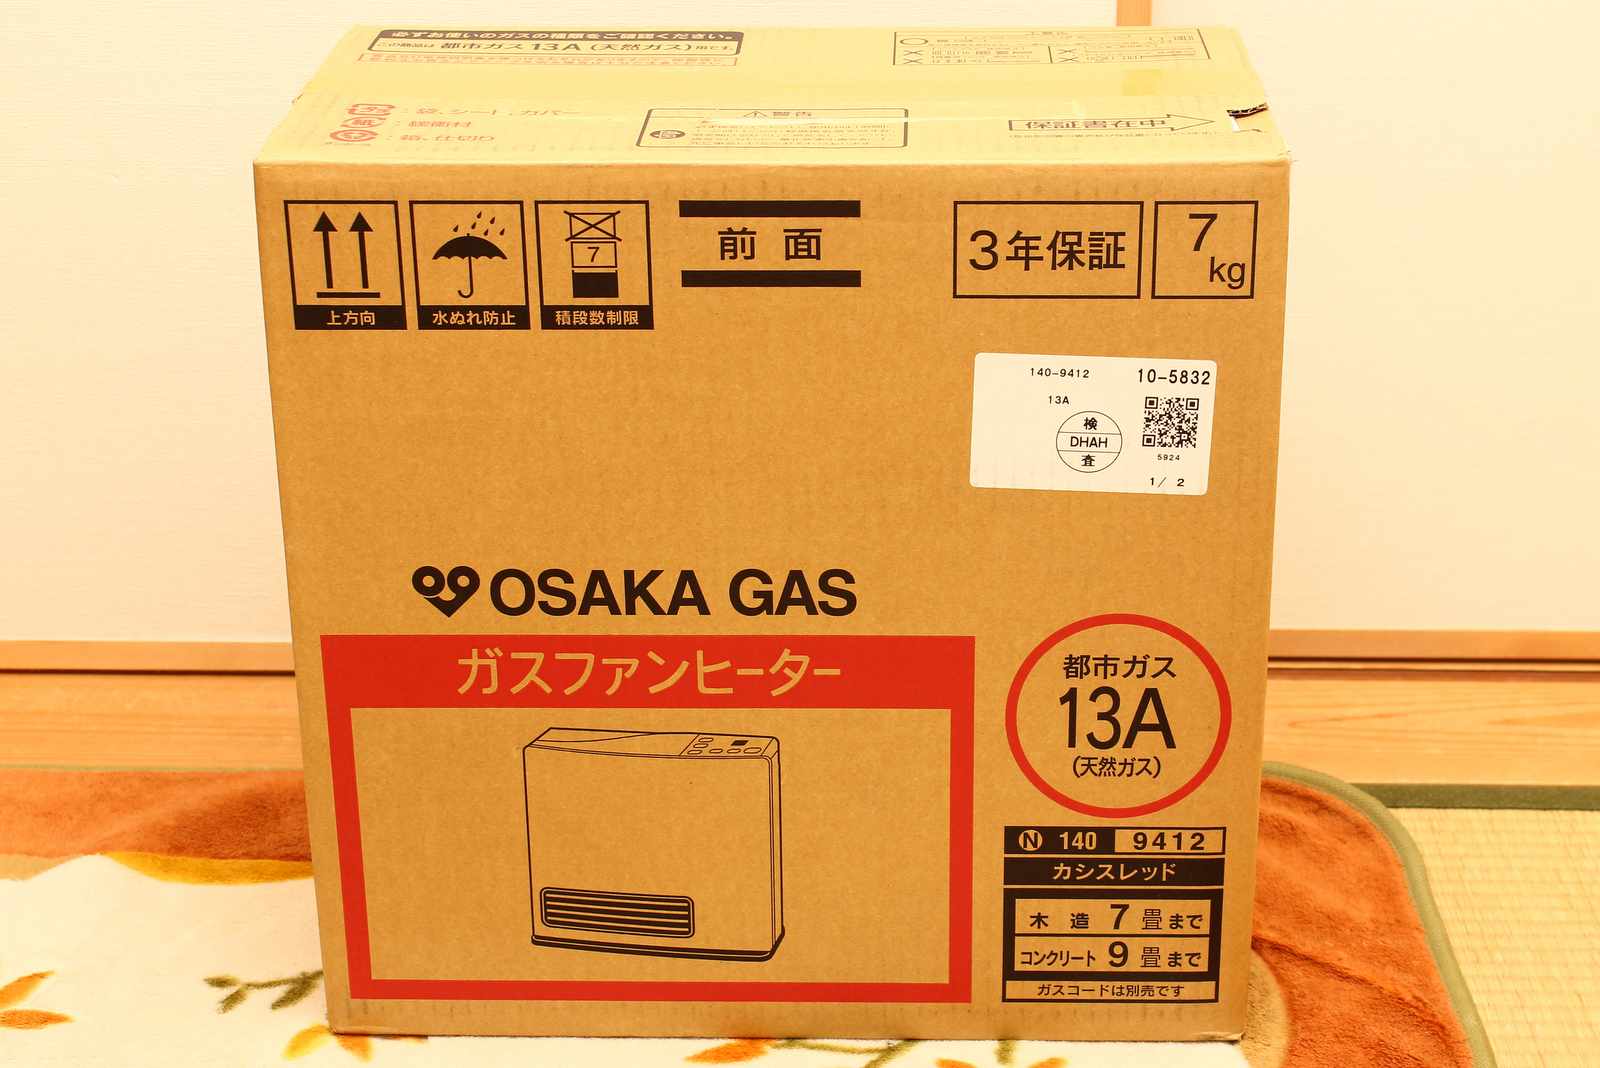 ガスファンヒーター 大阪ガス 140-9412レビュー | カワハラ雑記